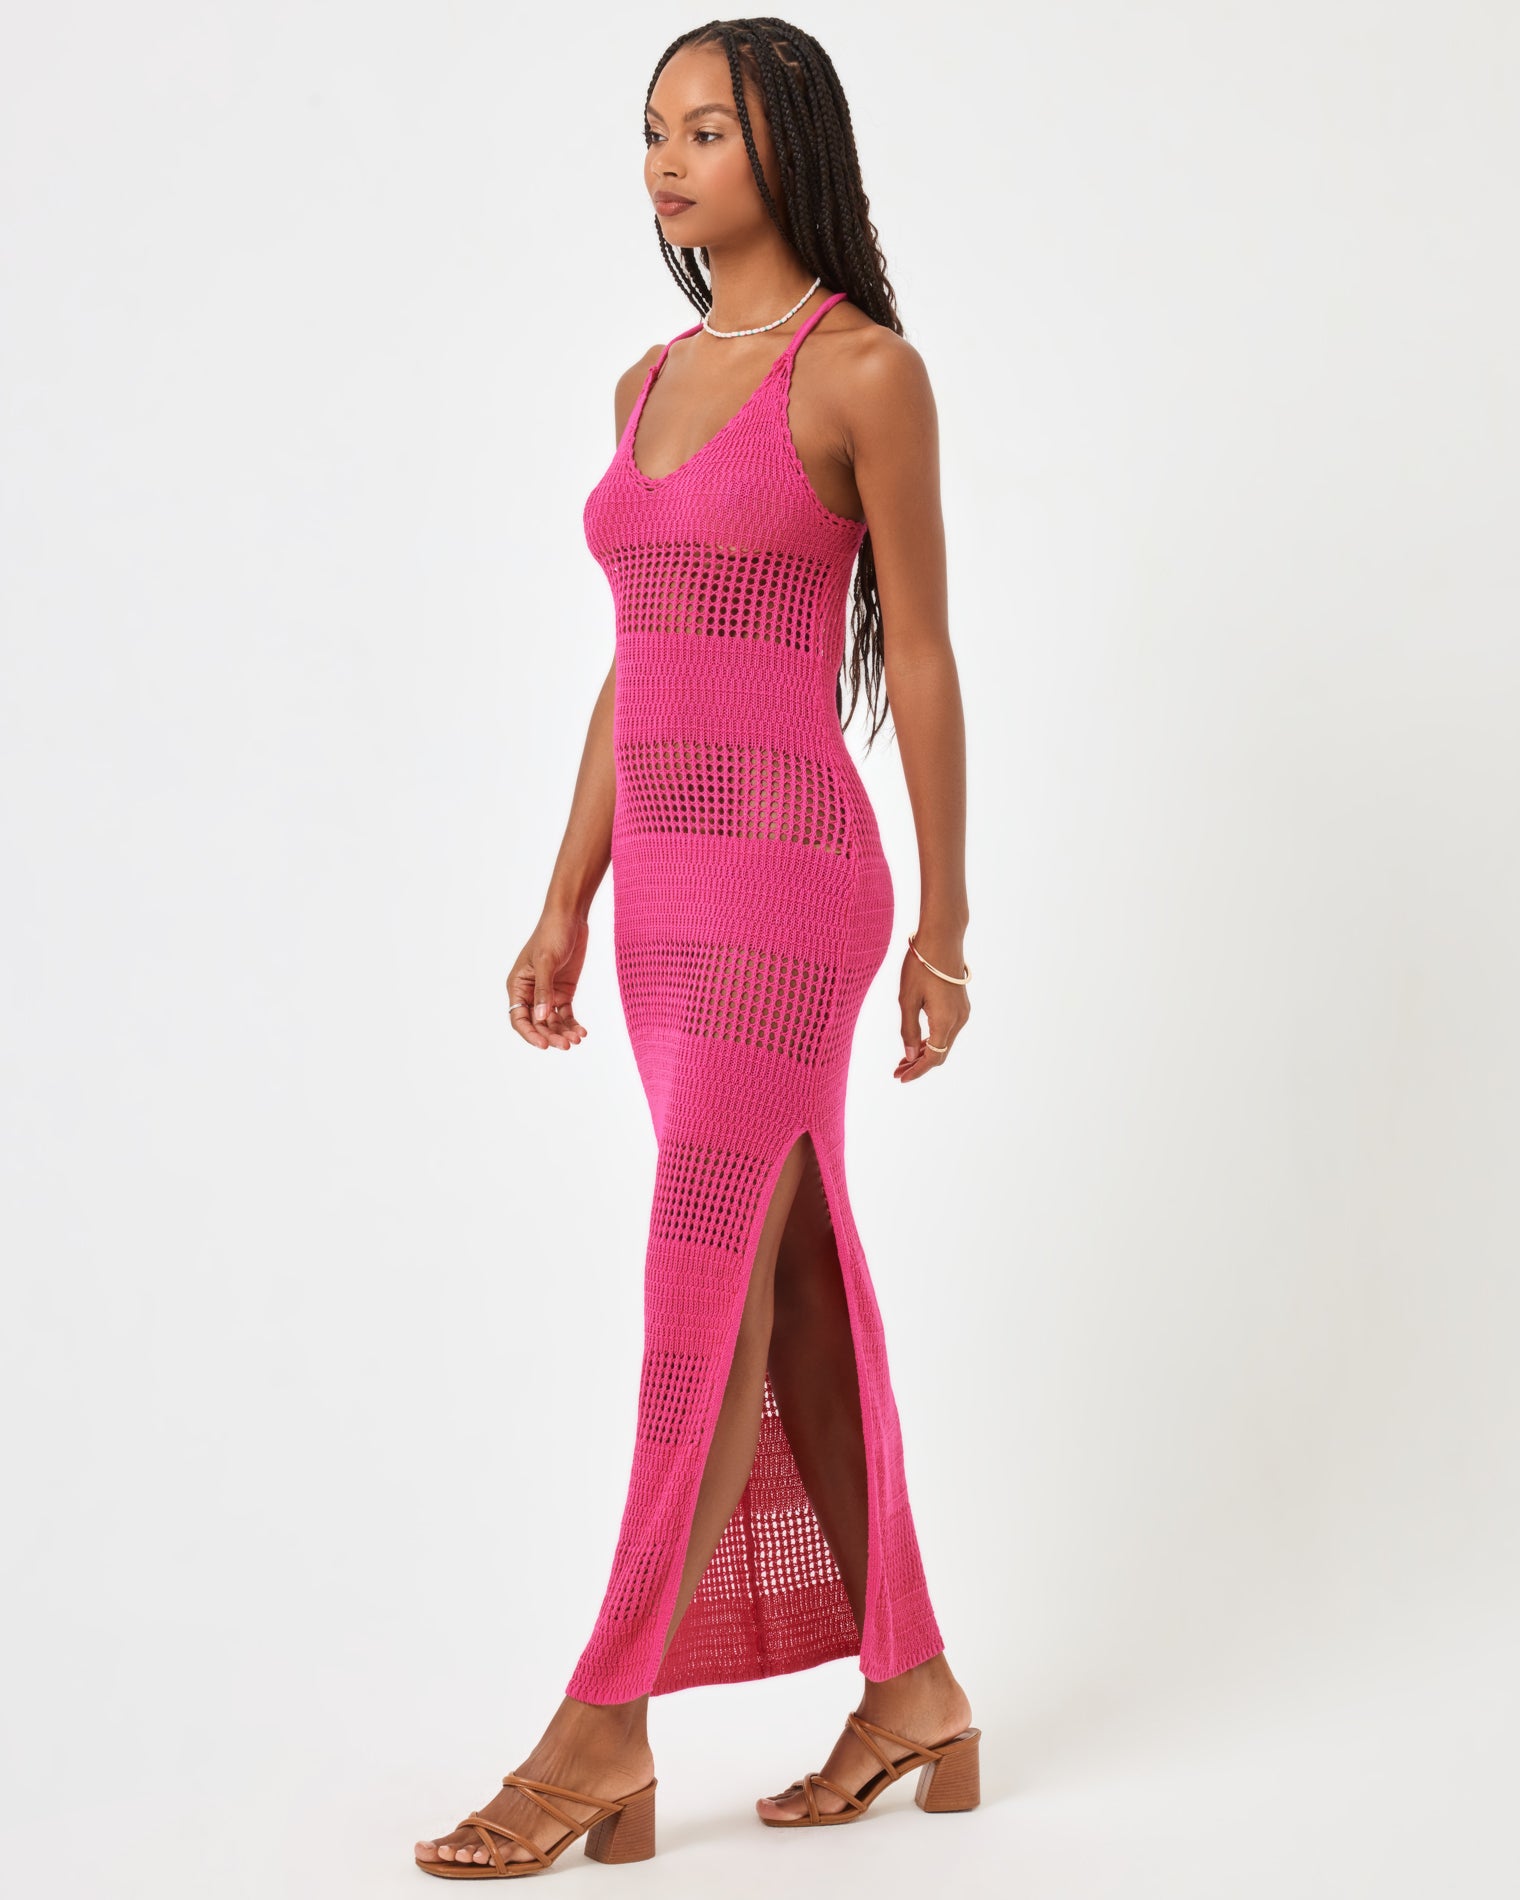 Kalea Dress - Bougainvillea Bougainvillea | Model: Taelor (size: S)